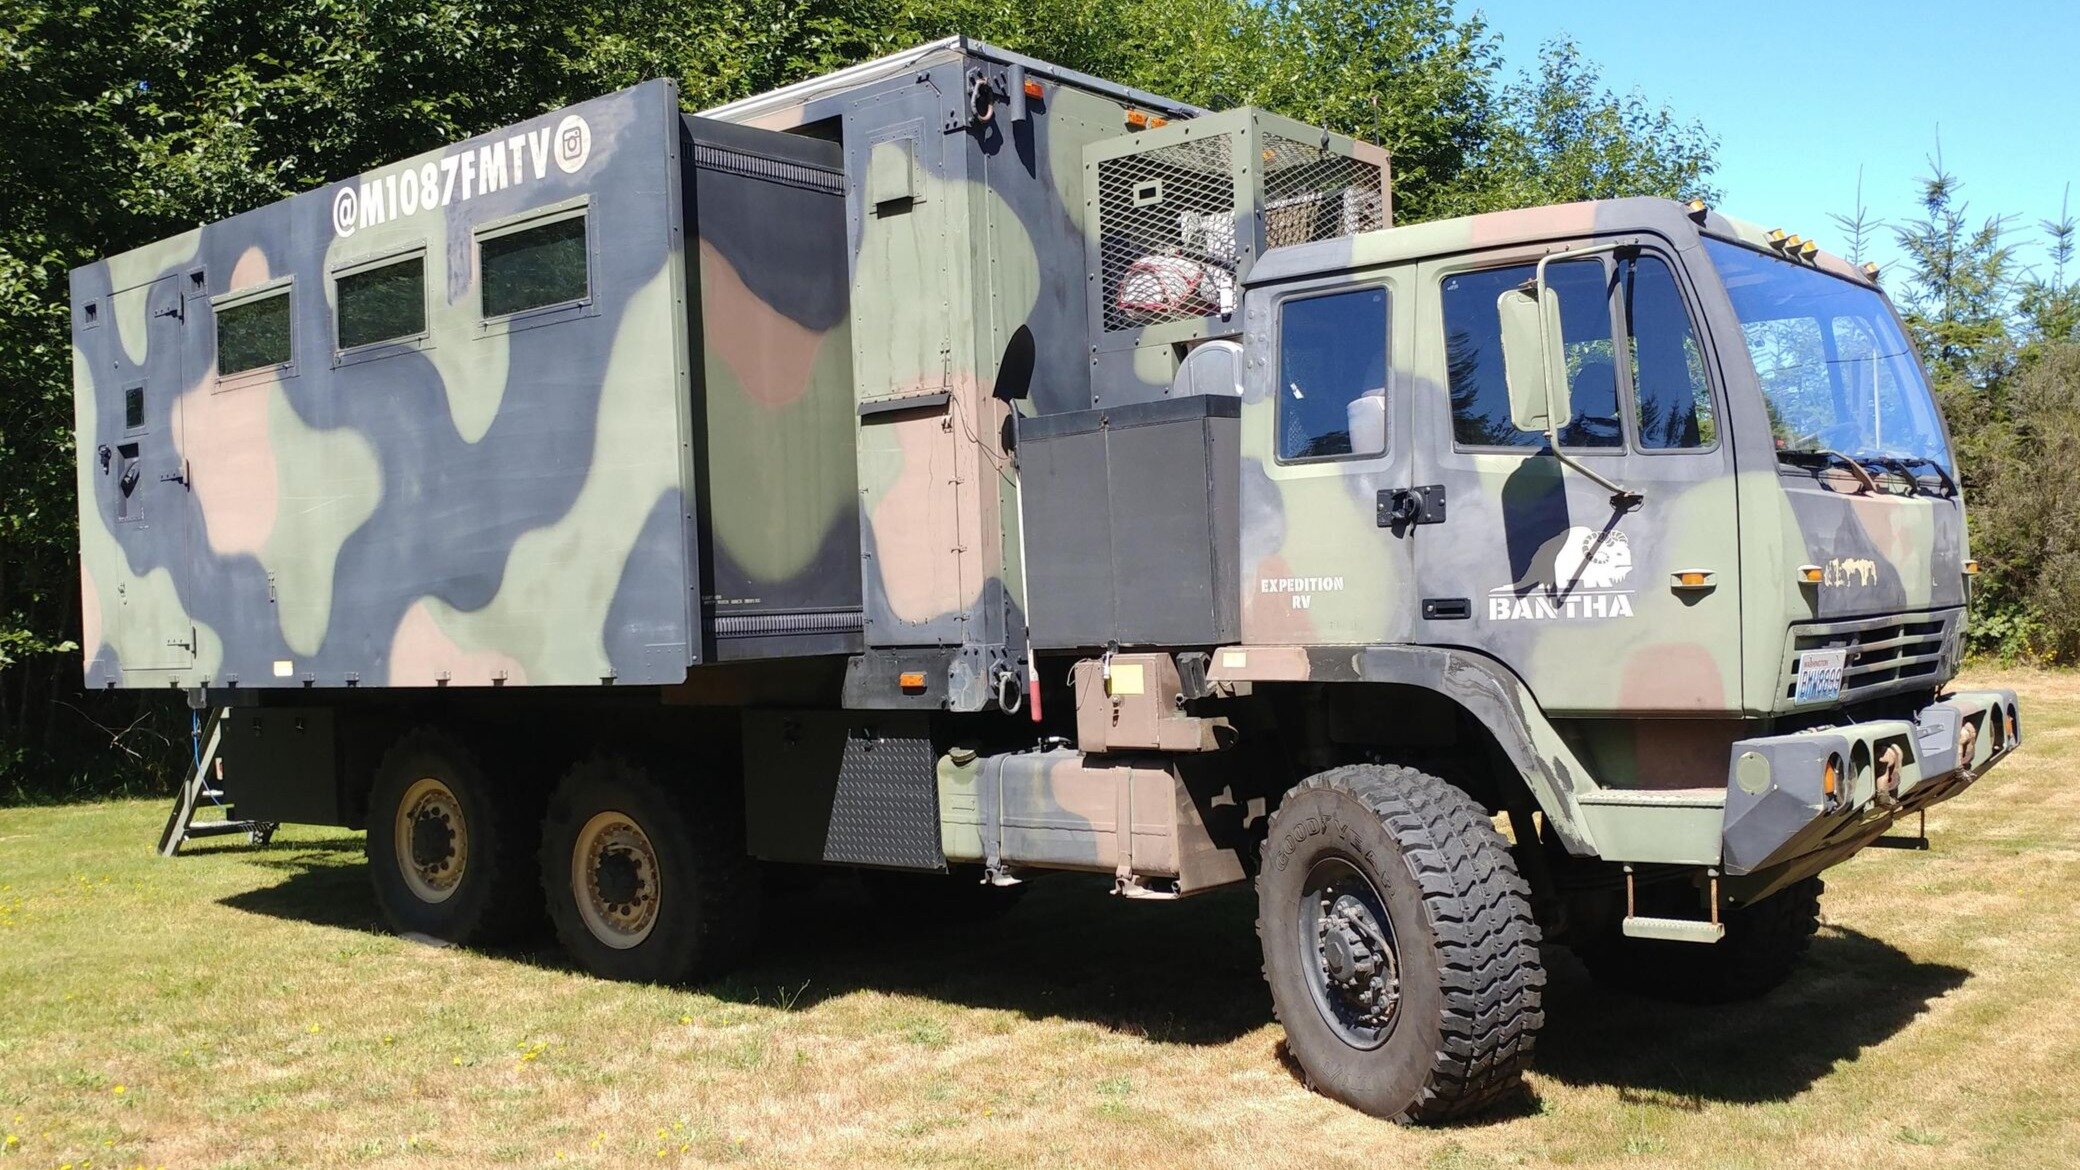 Американский армейский грузовик переделали в автодом и теперь продают